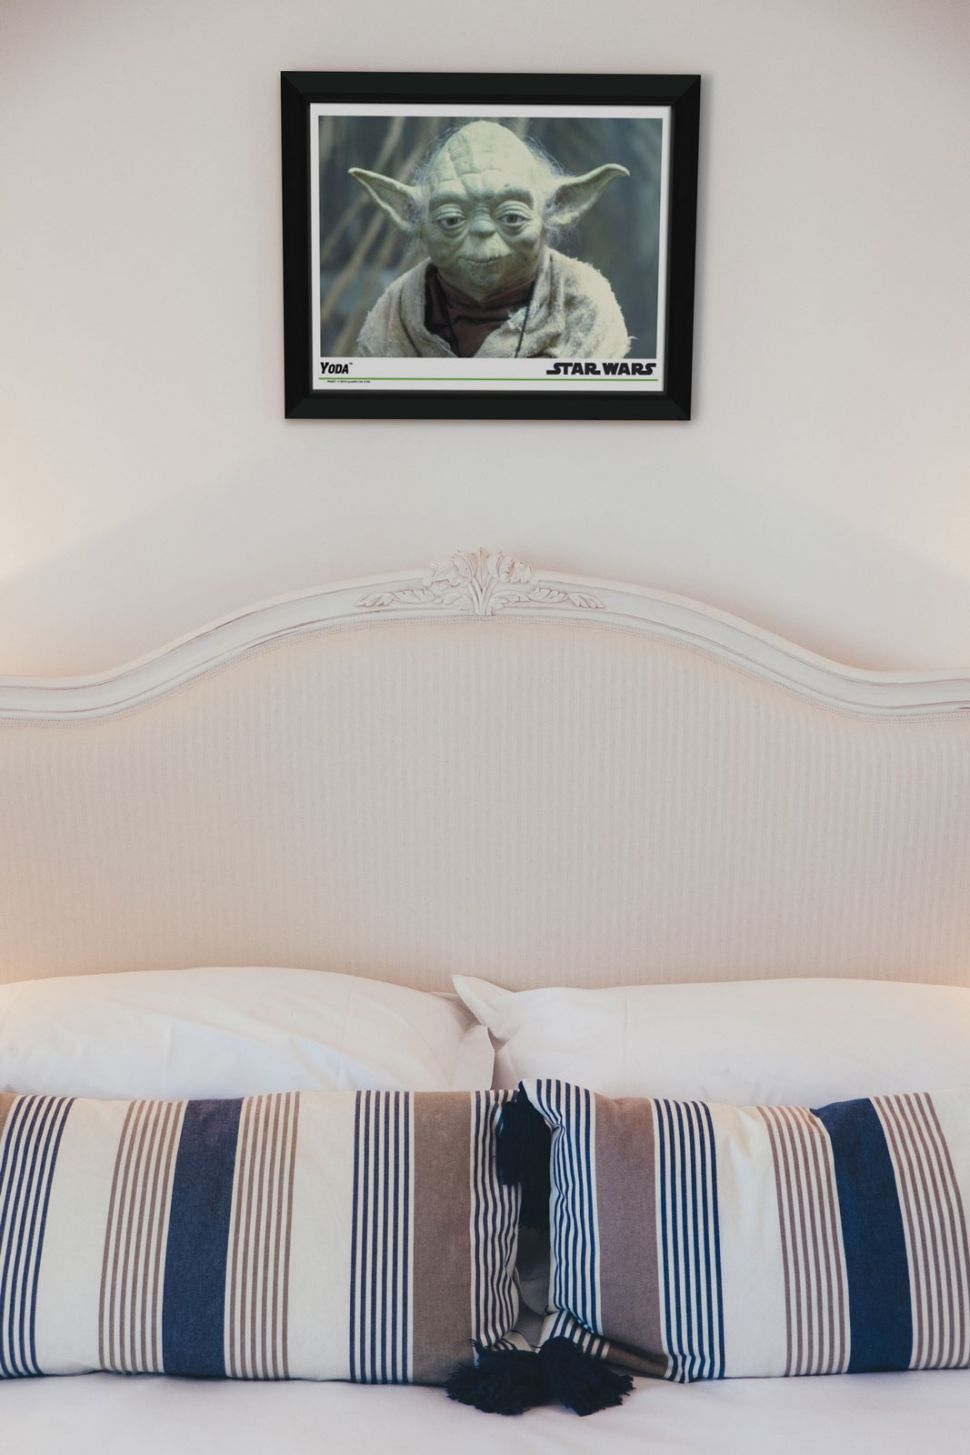 Obraz w ramie z Yodą z Gwiezdnych Wojen powieszony nad łóżkiem